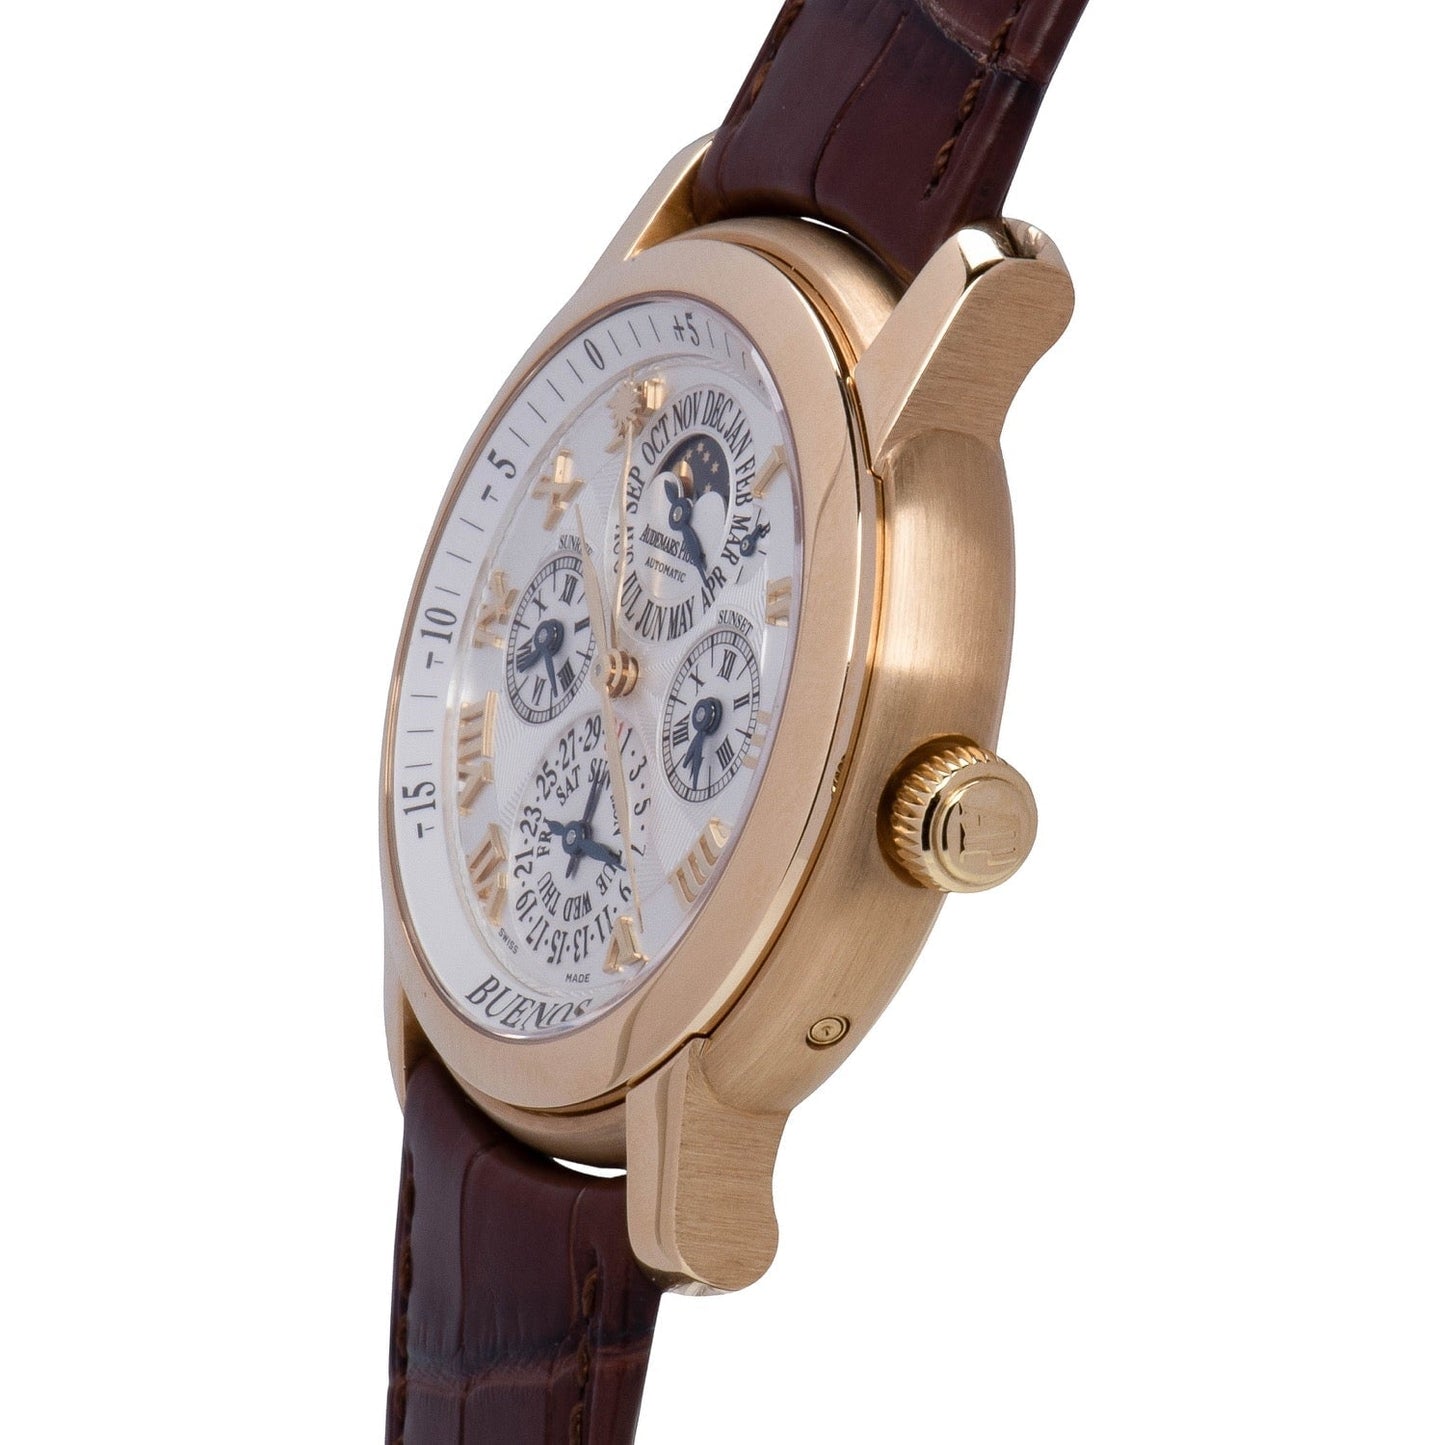 Audemars Piguet Jules Audemars Equation of Time Men's Watch 26003BA.OO.D088CR.010